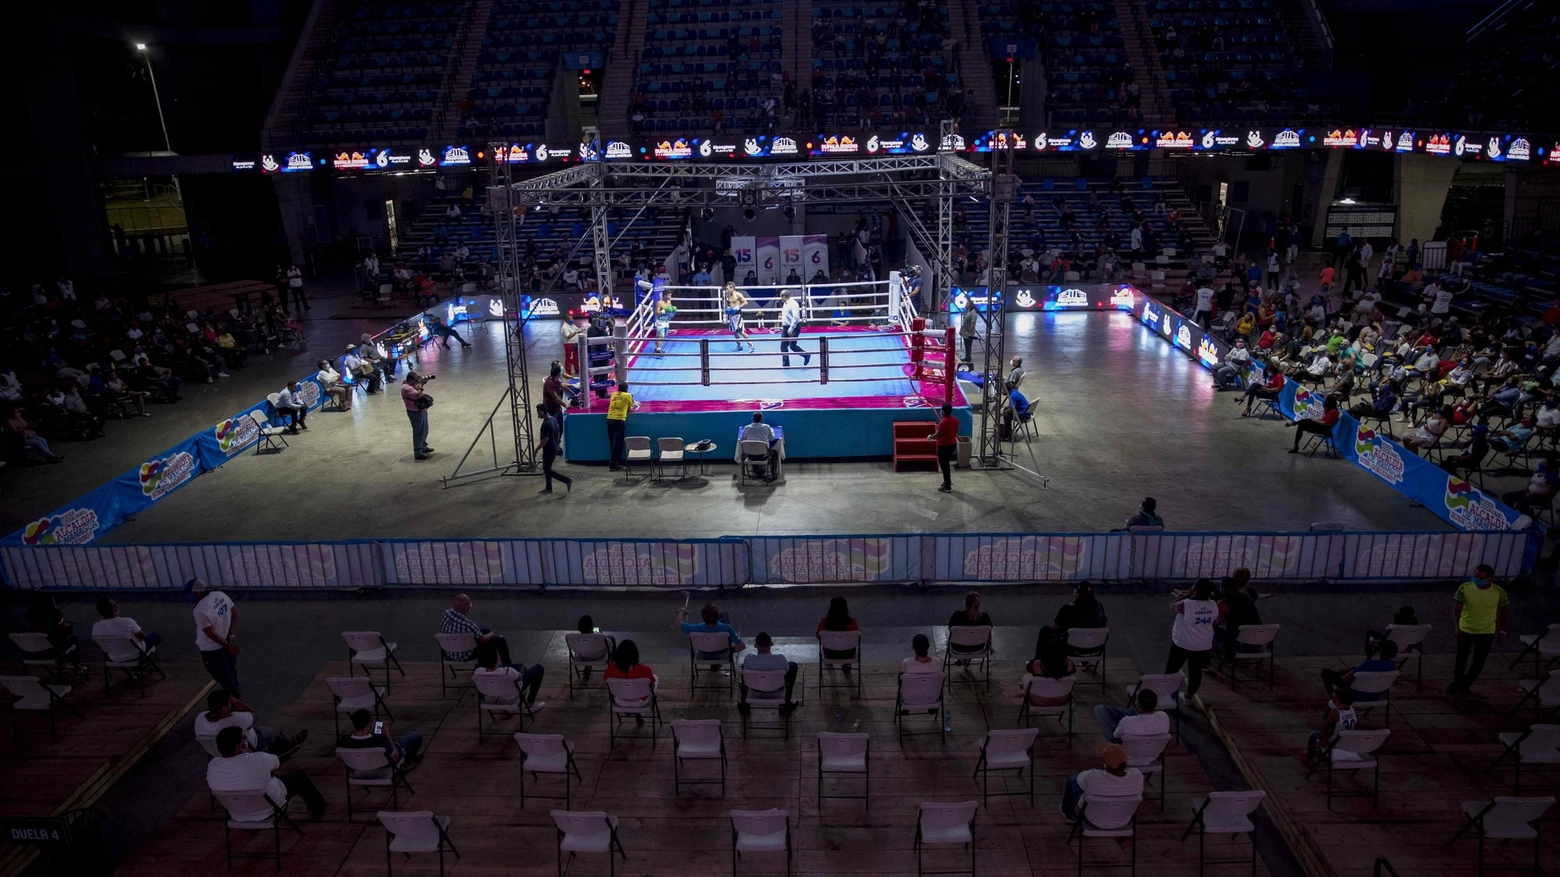 In Nicaragua incontri di boxe nonostante la pandemia (Ansa)